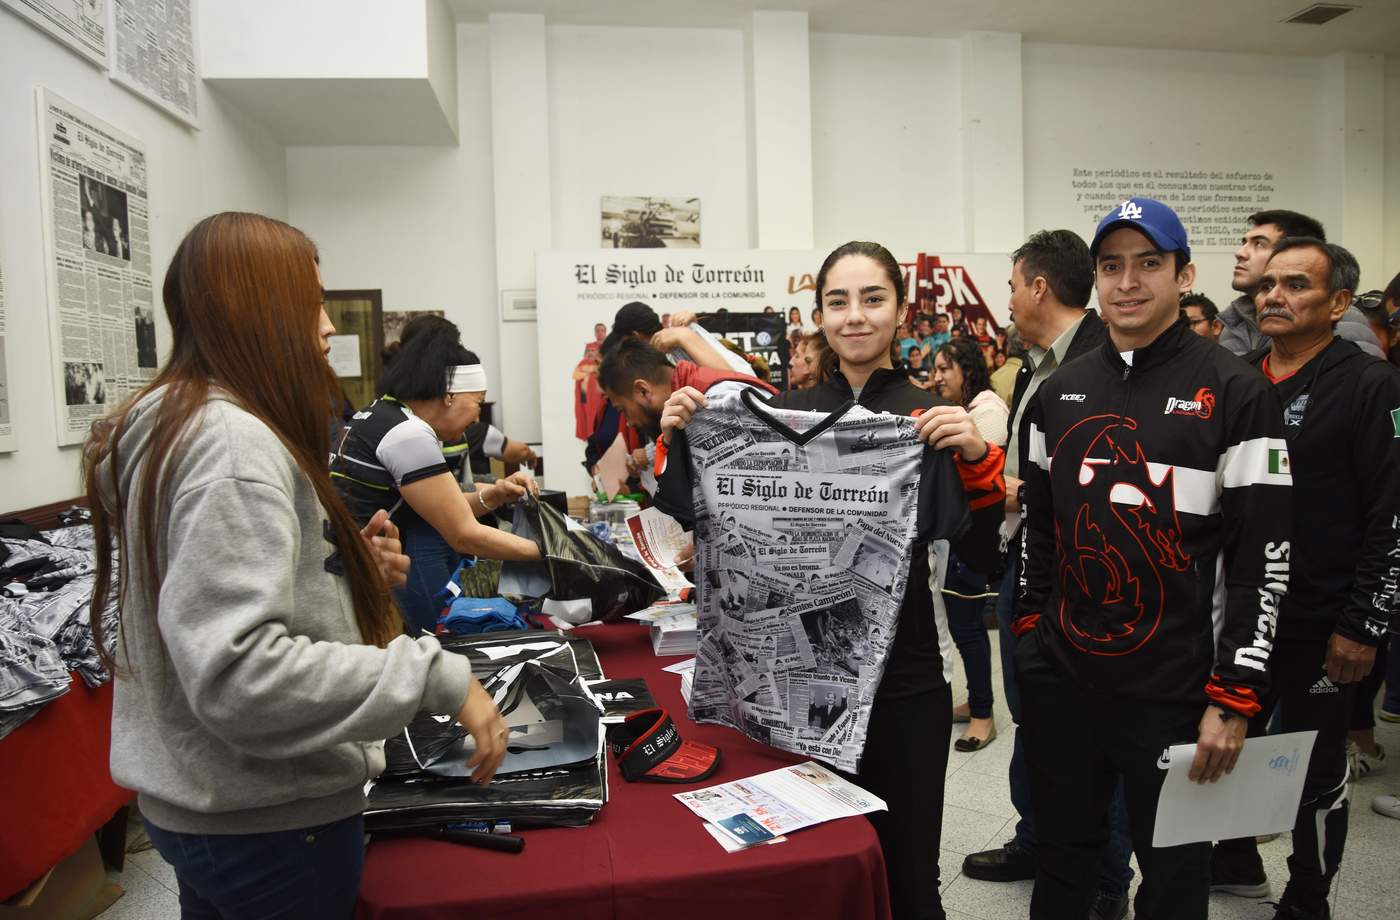 Entregan kits para carrera de El Siglo de Torreón